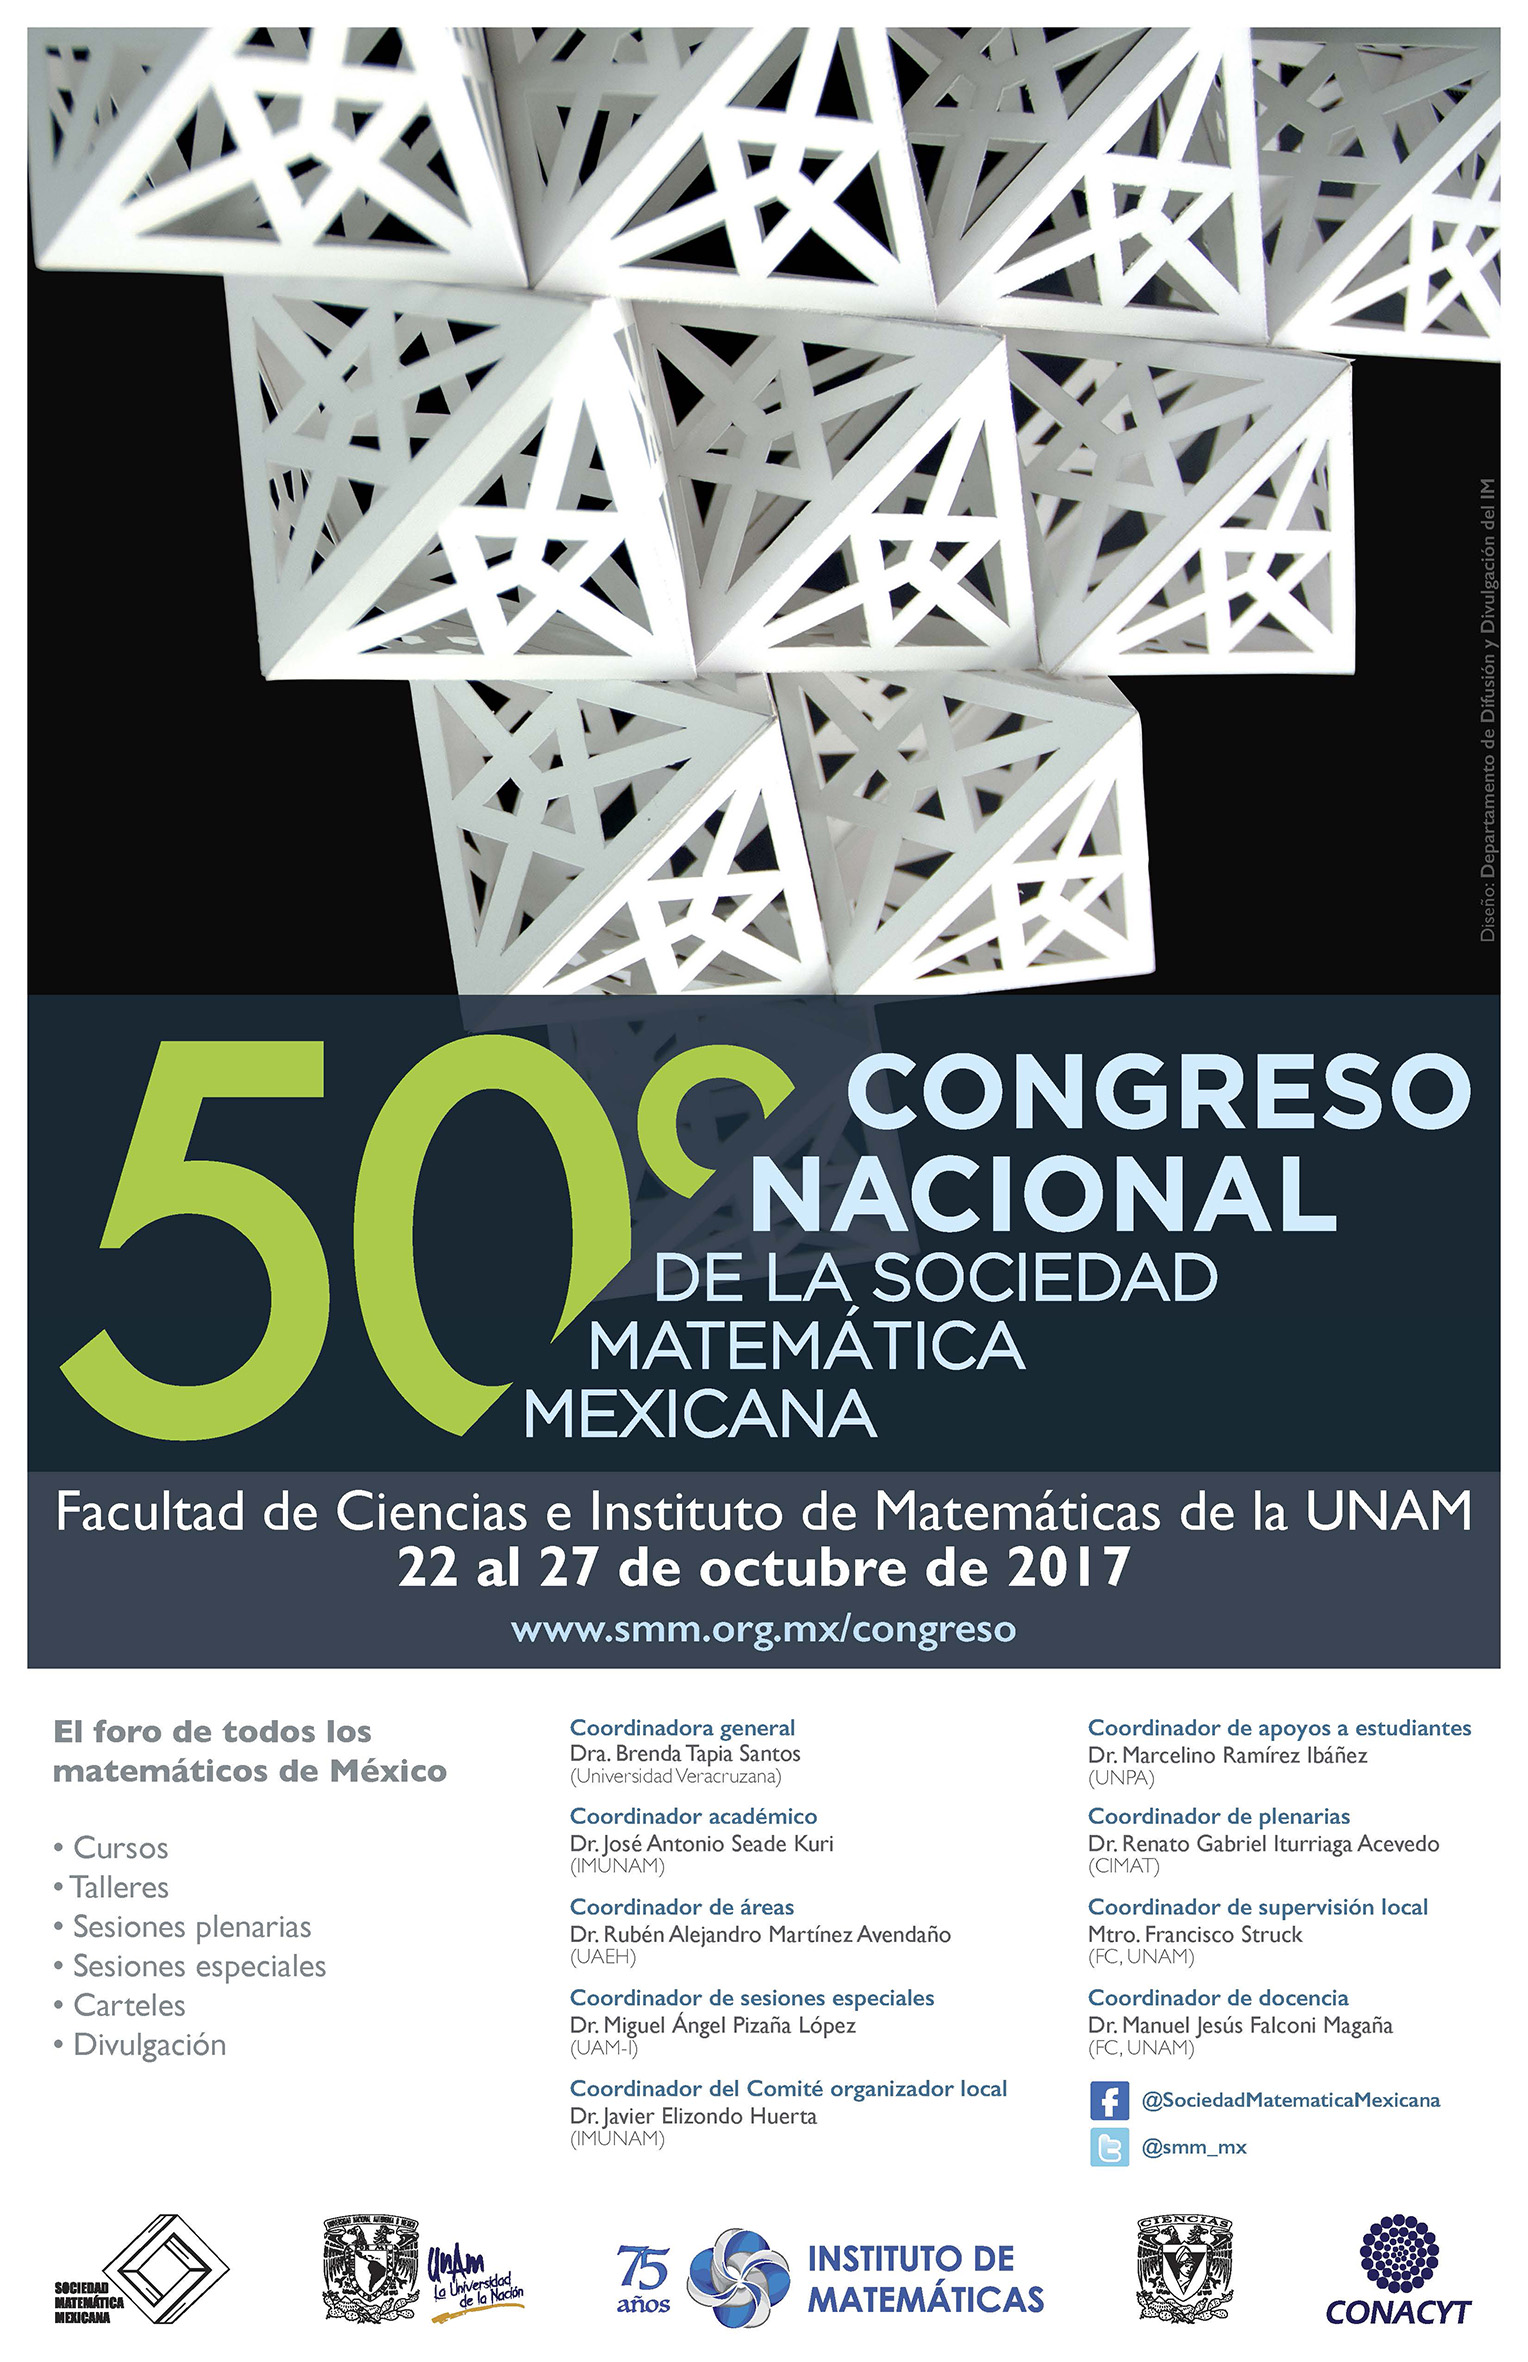 50 Congreso Nacional de la Sociedad Matemática Mexicana